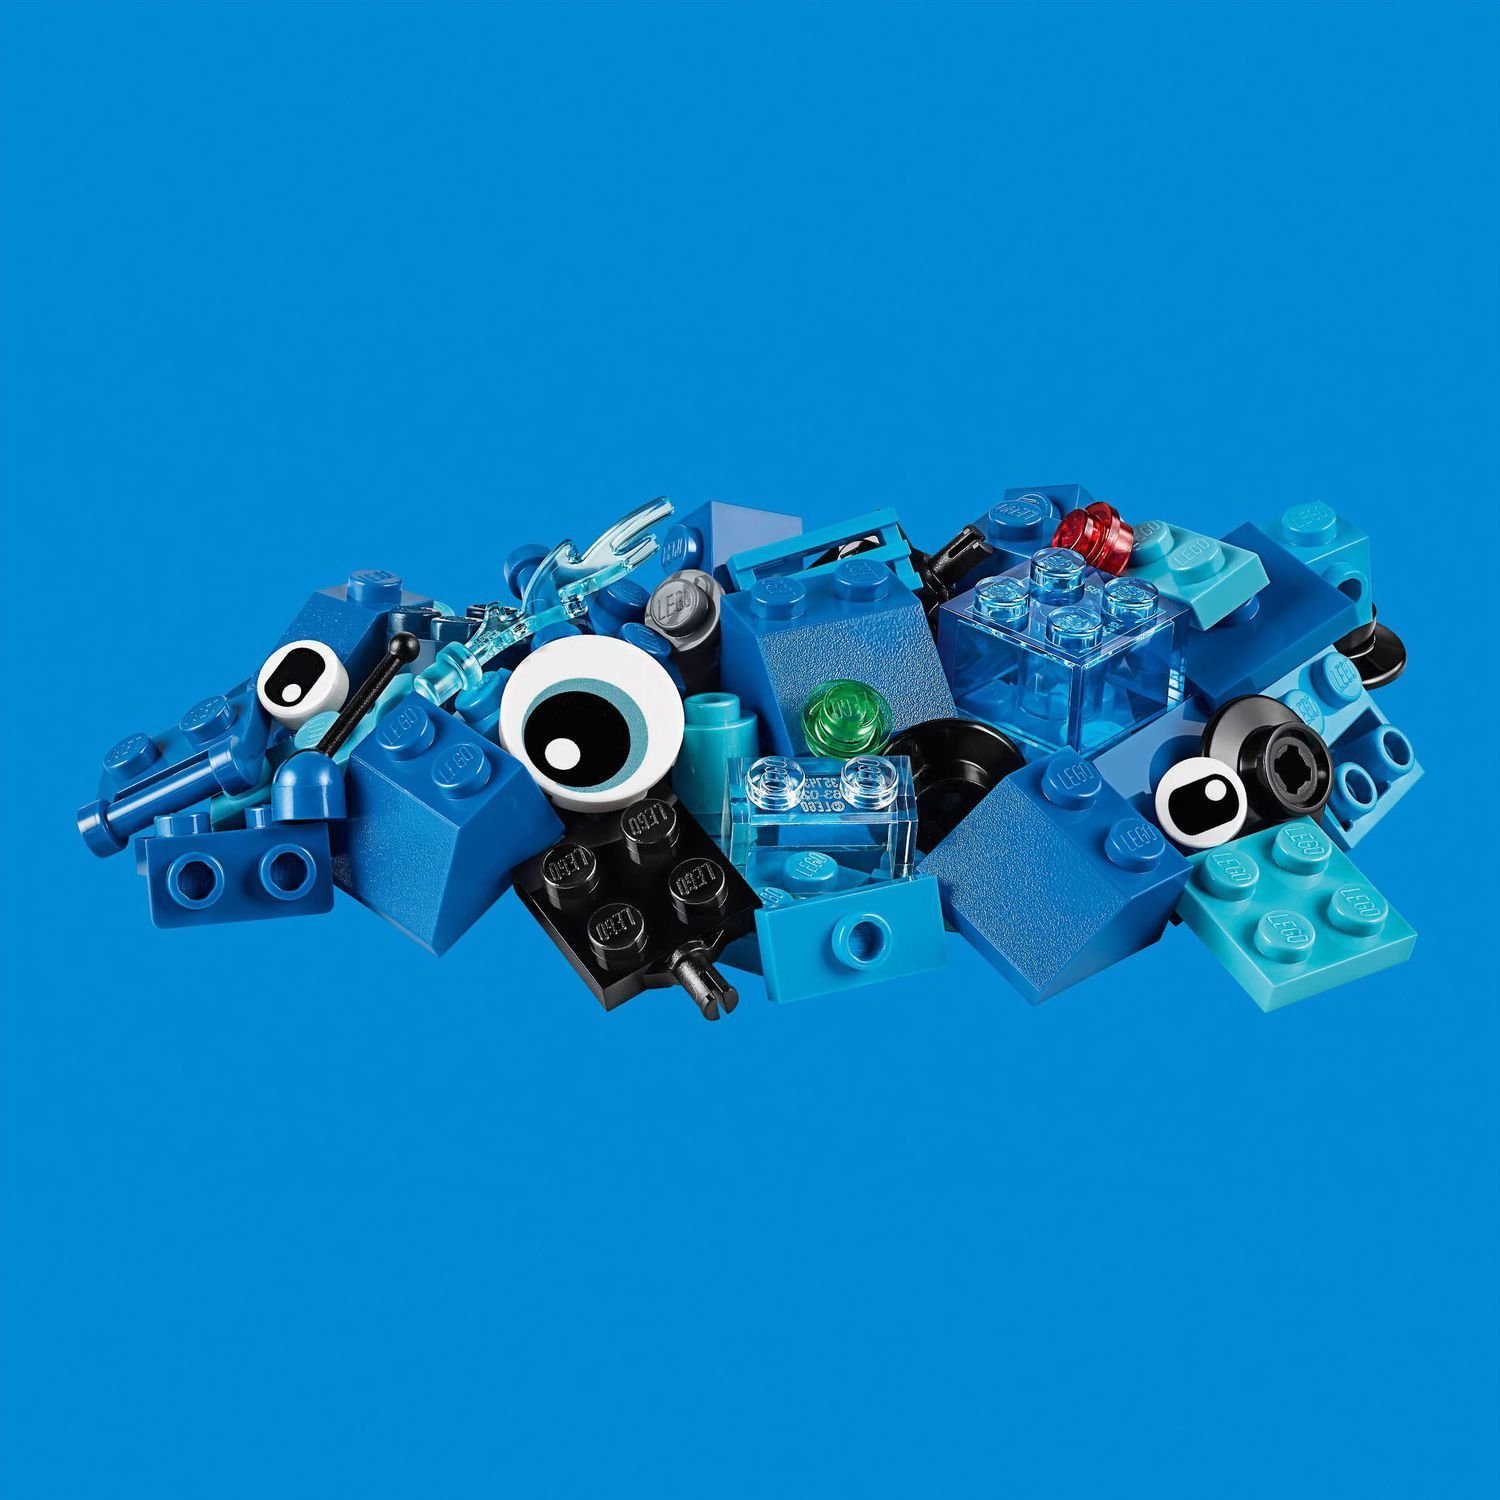 Конструктор LEGO Classic 11006 Синий набор для конструирования